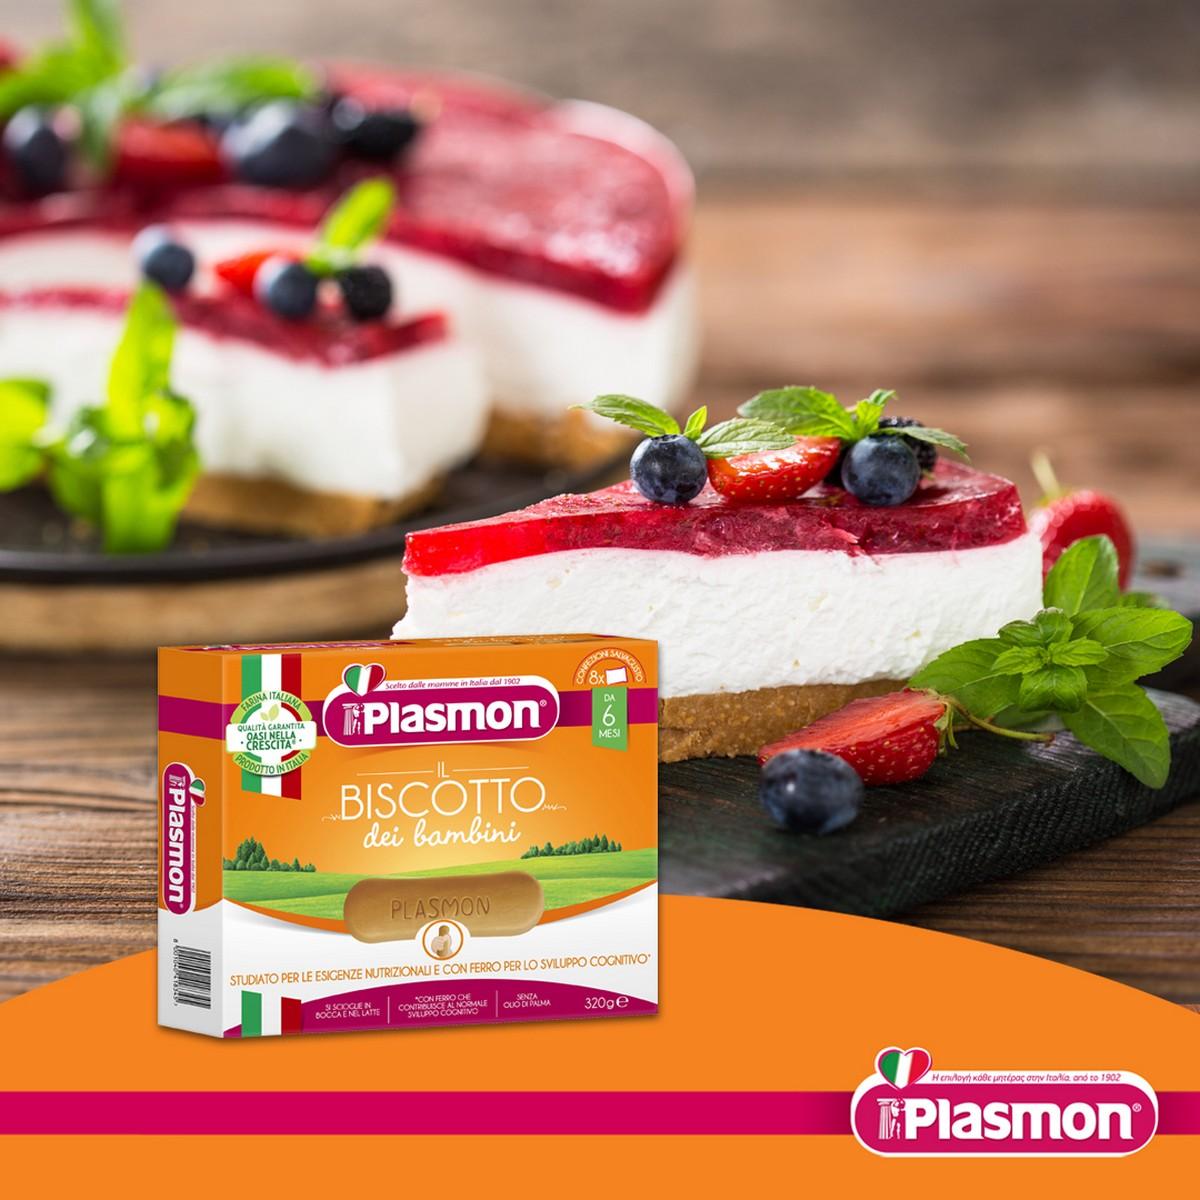 Plasmon cheesecake